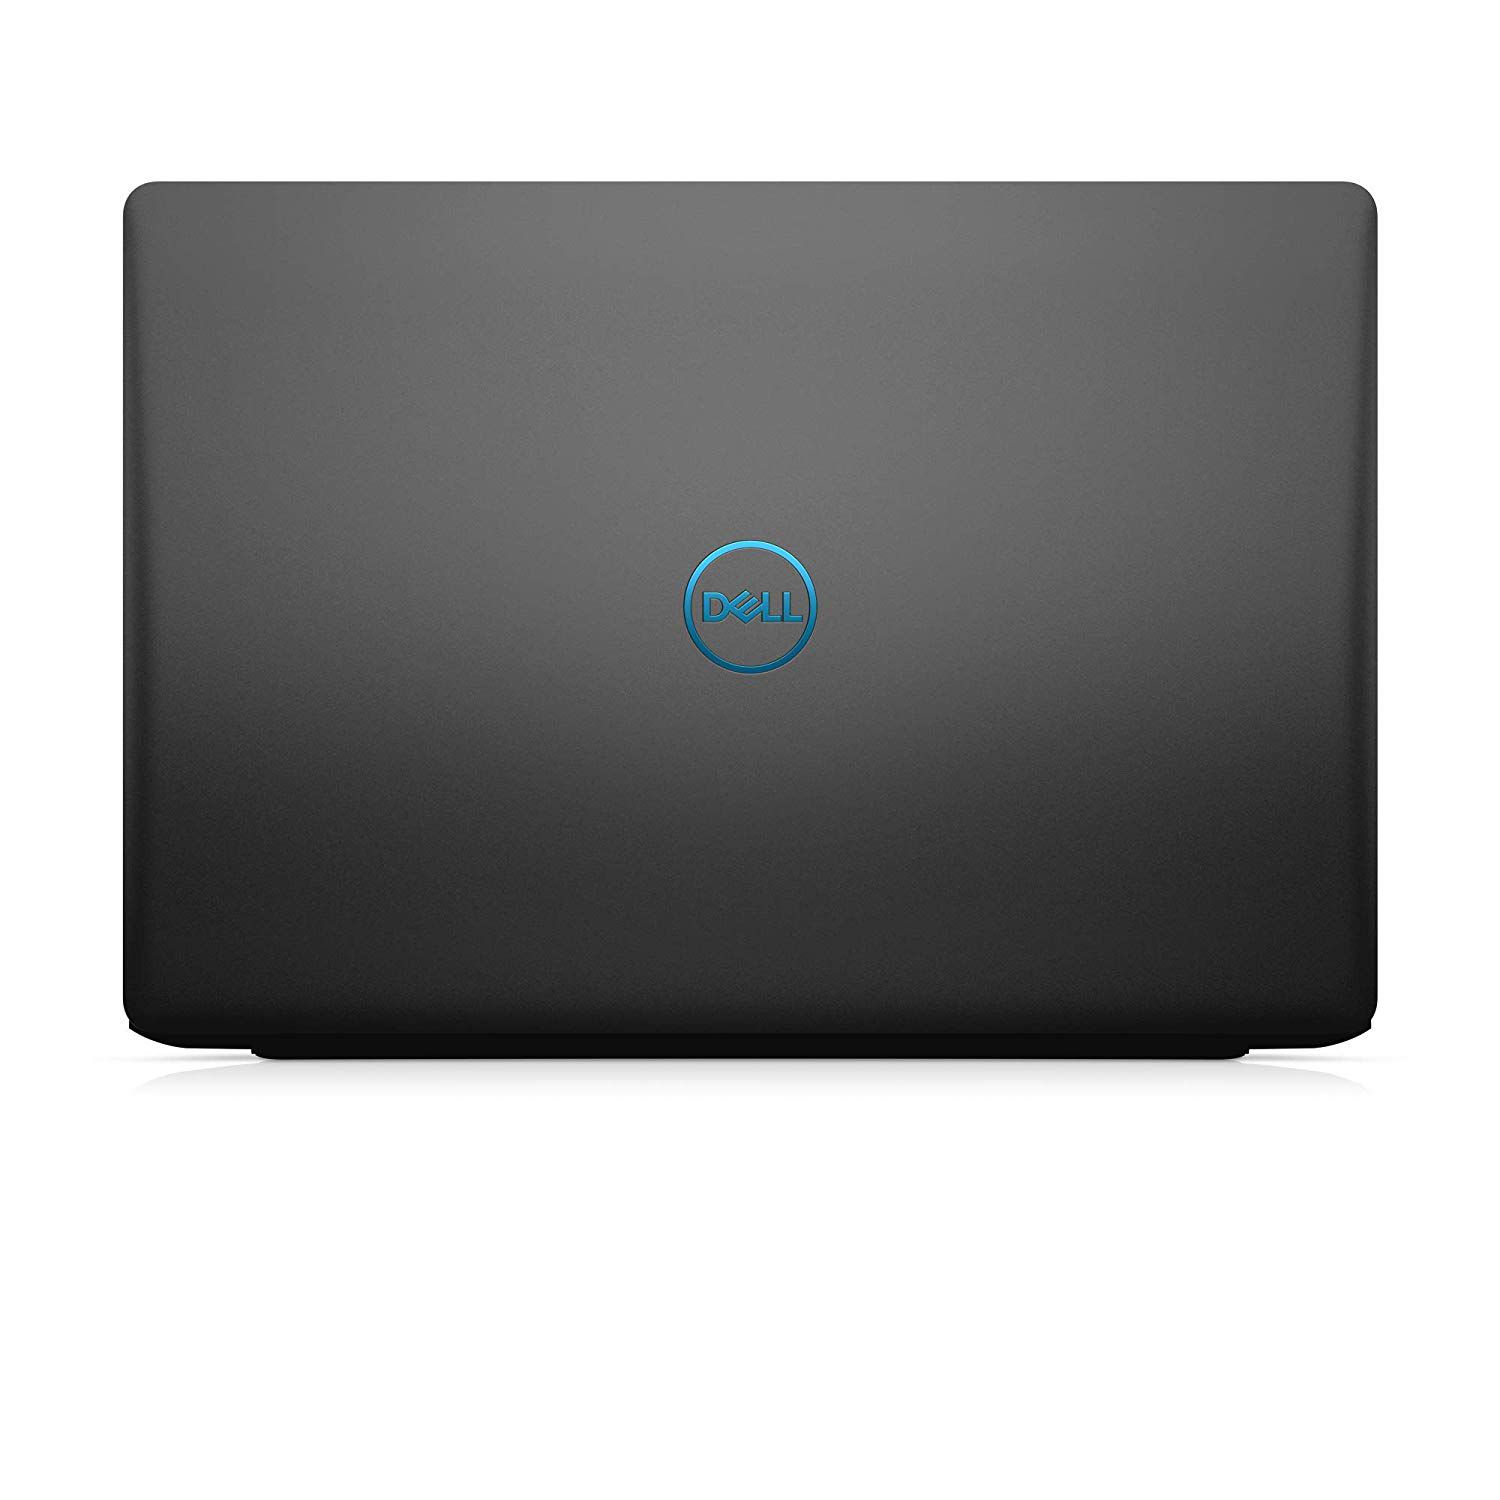 Notebook Dell G7 7588 Core I7 8750H 8Gb Hd 1Tb Ssd 128Gb Gtx 1050 4Gb Tela 15.6' Fhd Ubuntu Linux